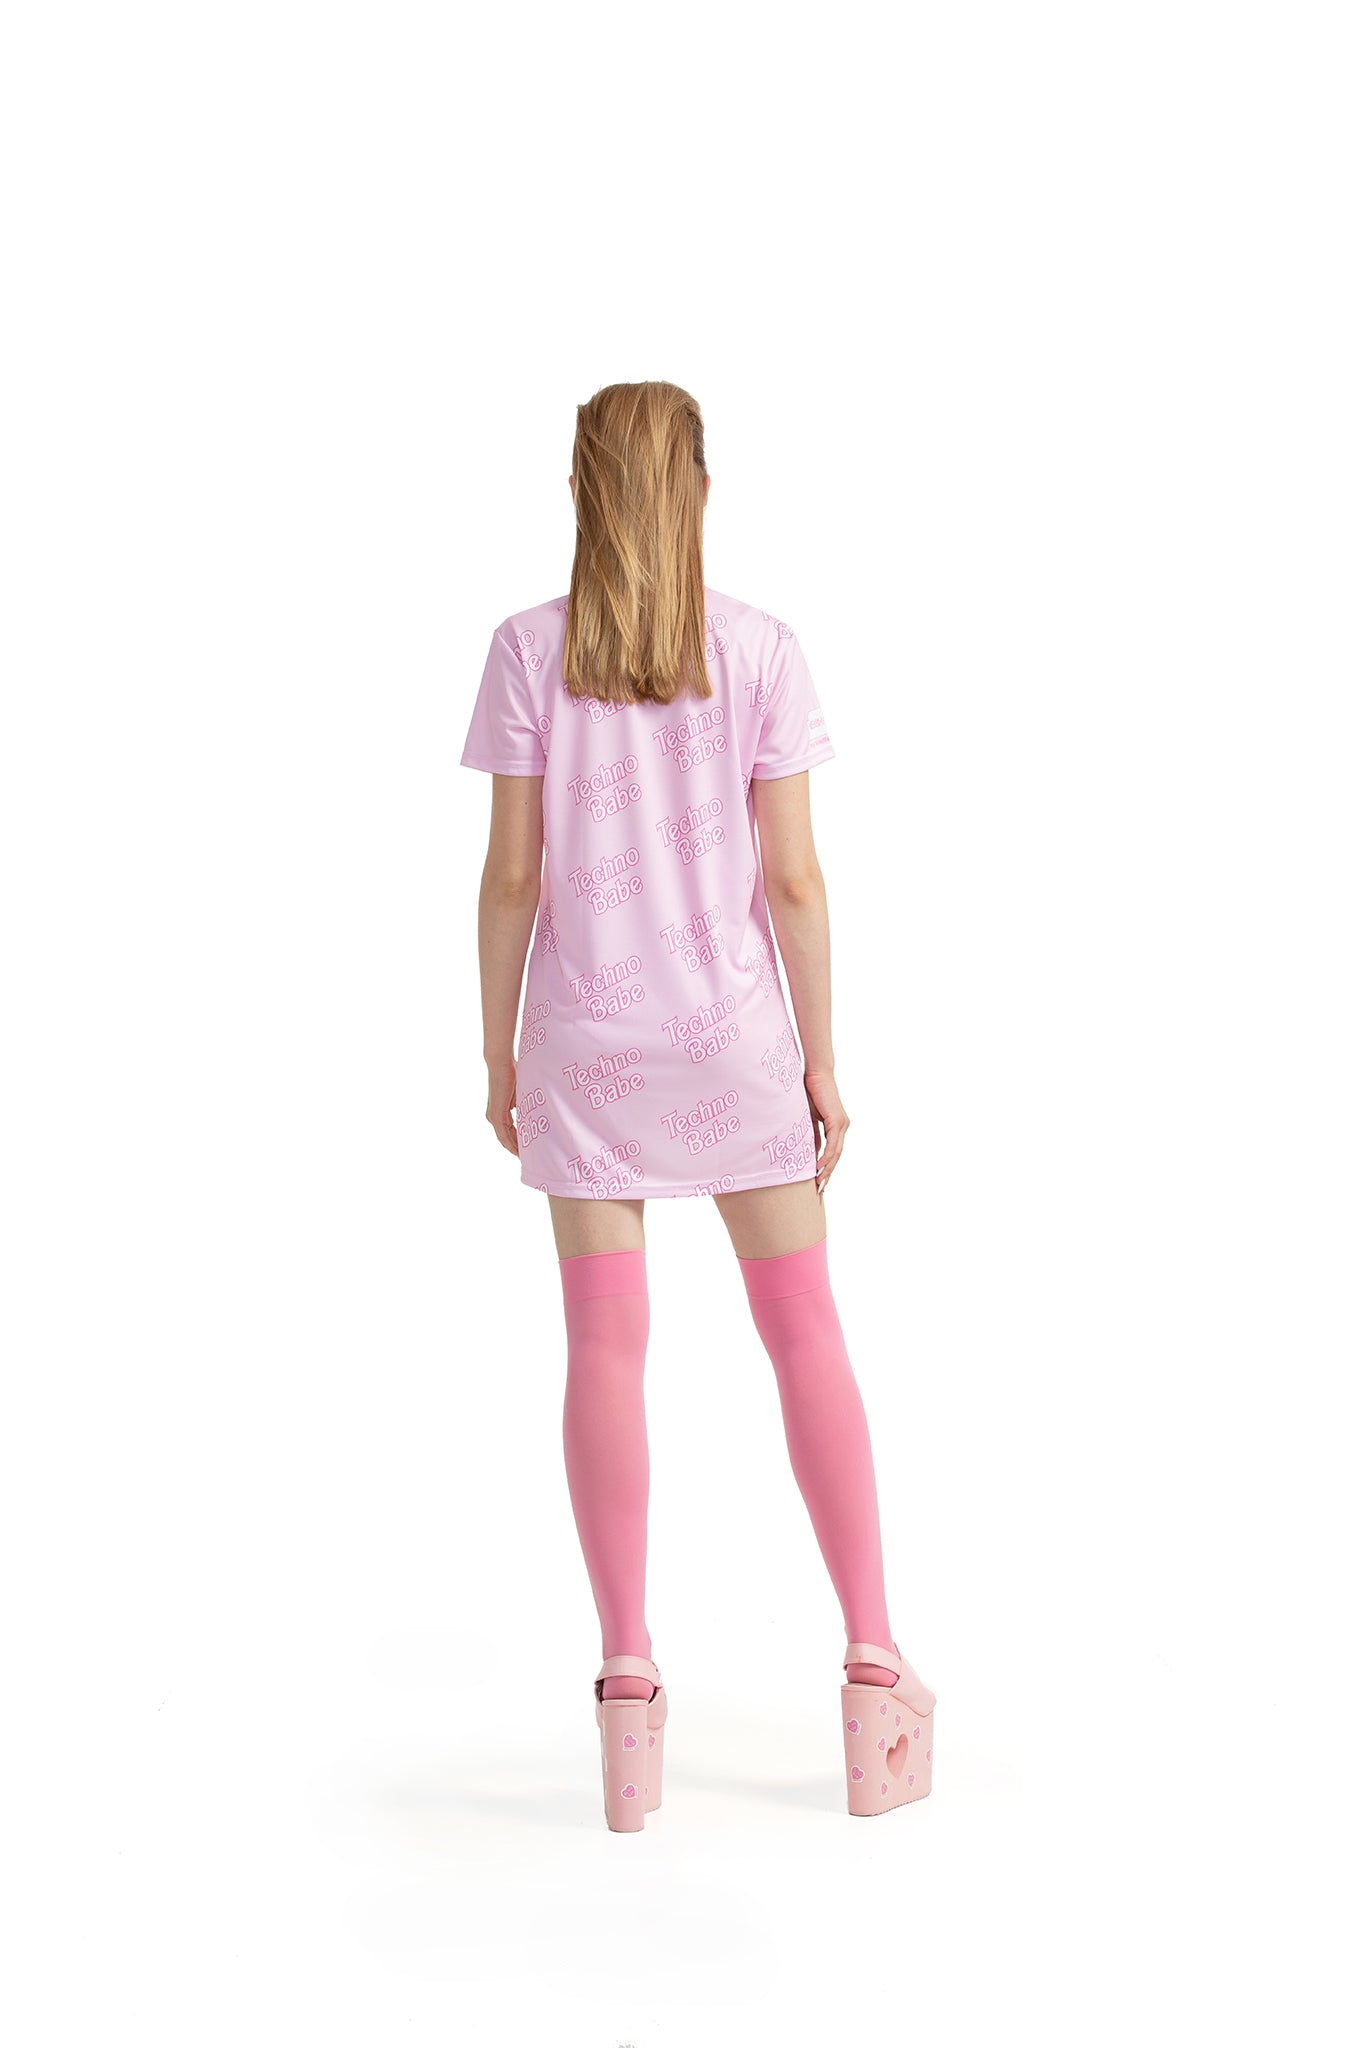 Techno Babe [Рожева] - футболка звичайного крою з боковими розрізами